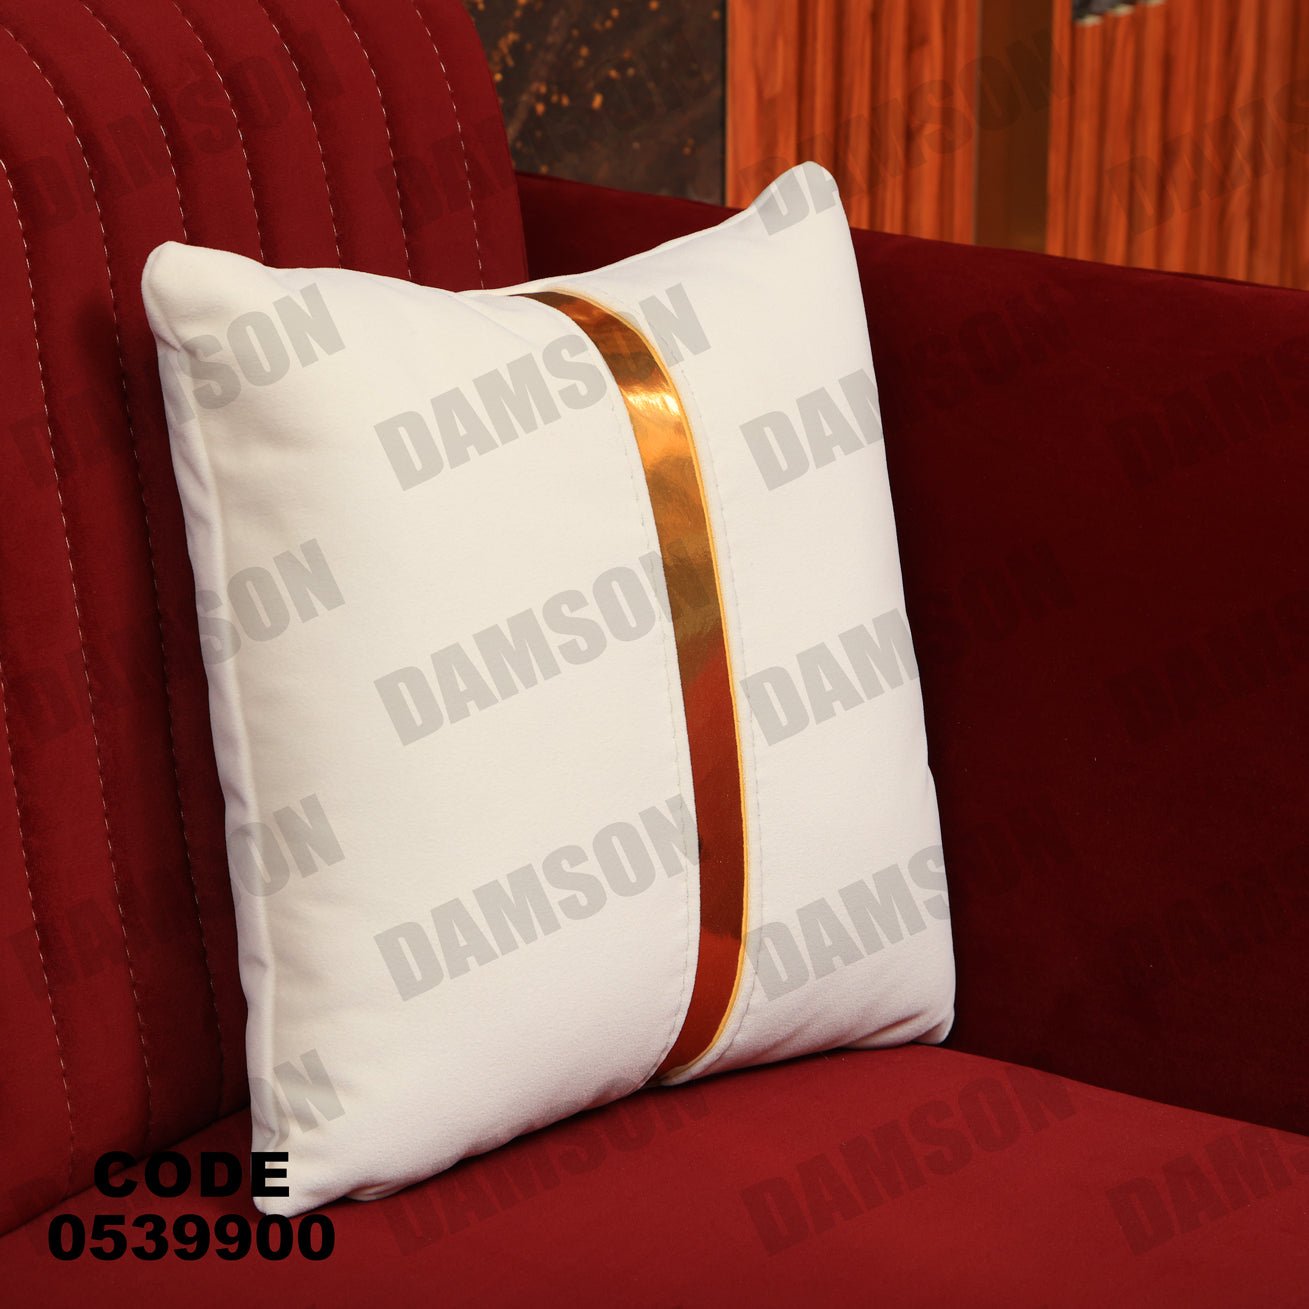 انترية 399 - Damson Furnitureانترية 399